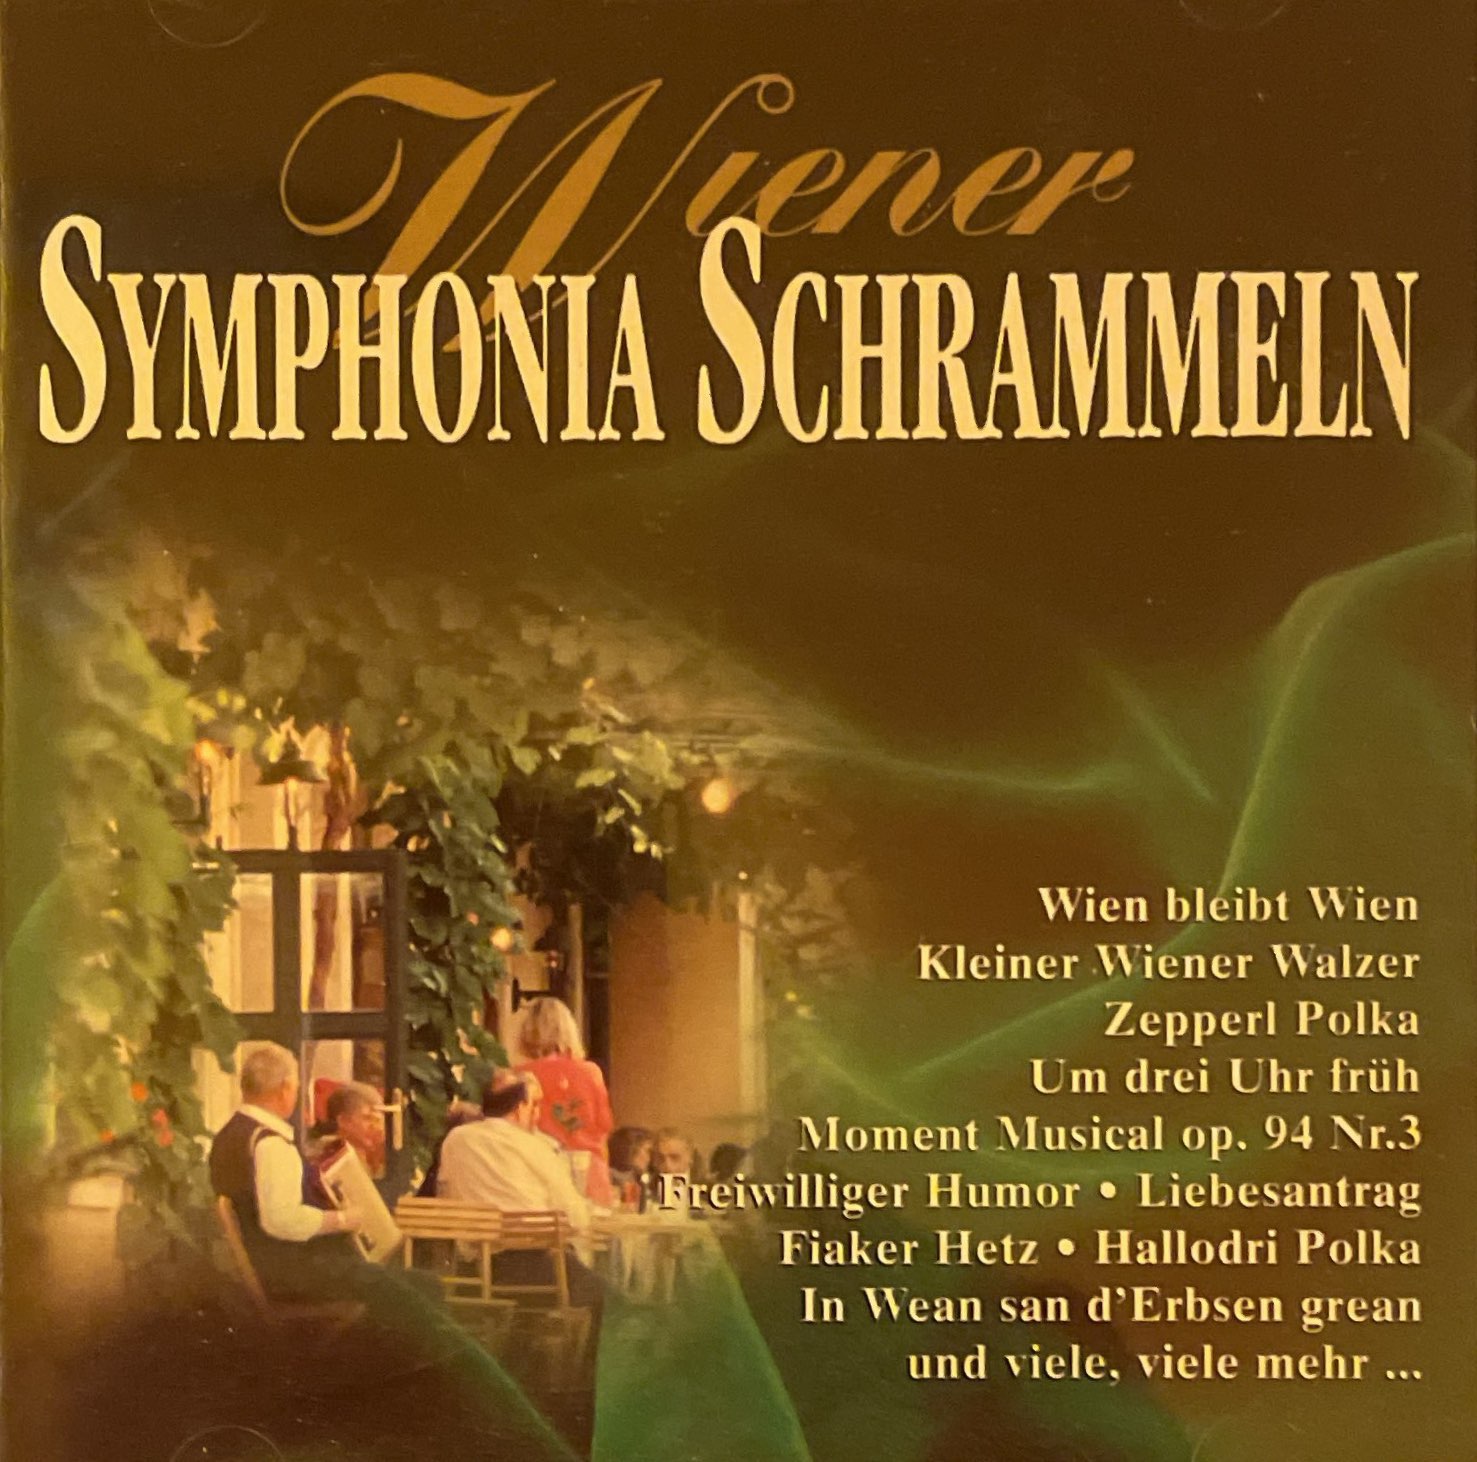 Wiener Symphonia Schrammeln